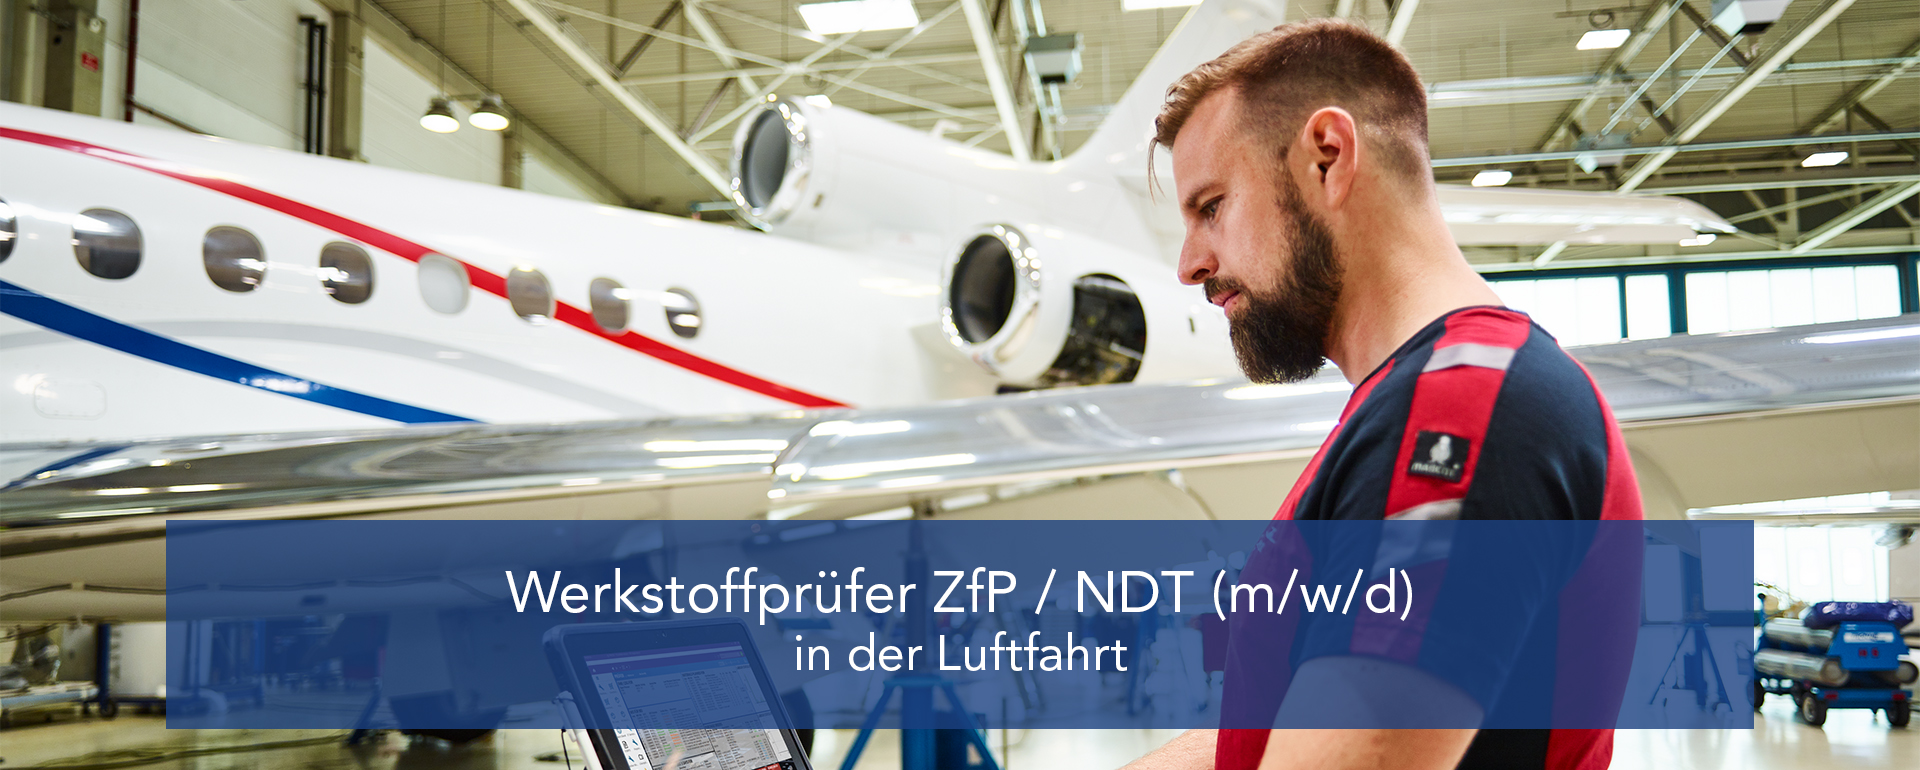 ZfP/NDT Prüfer (m/w/d) in der Luftfahrt